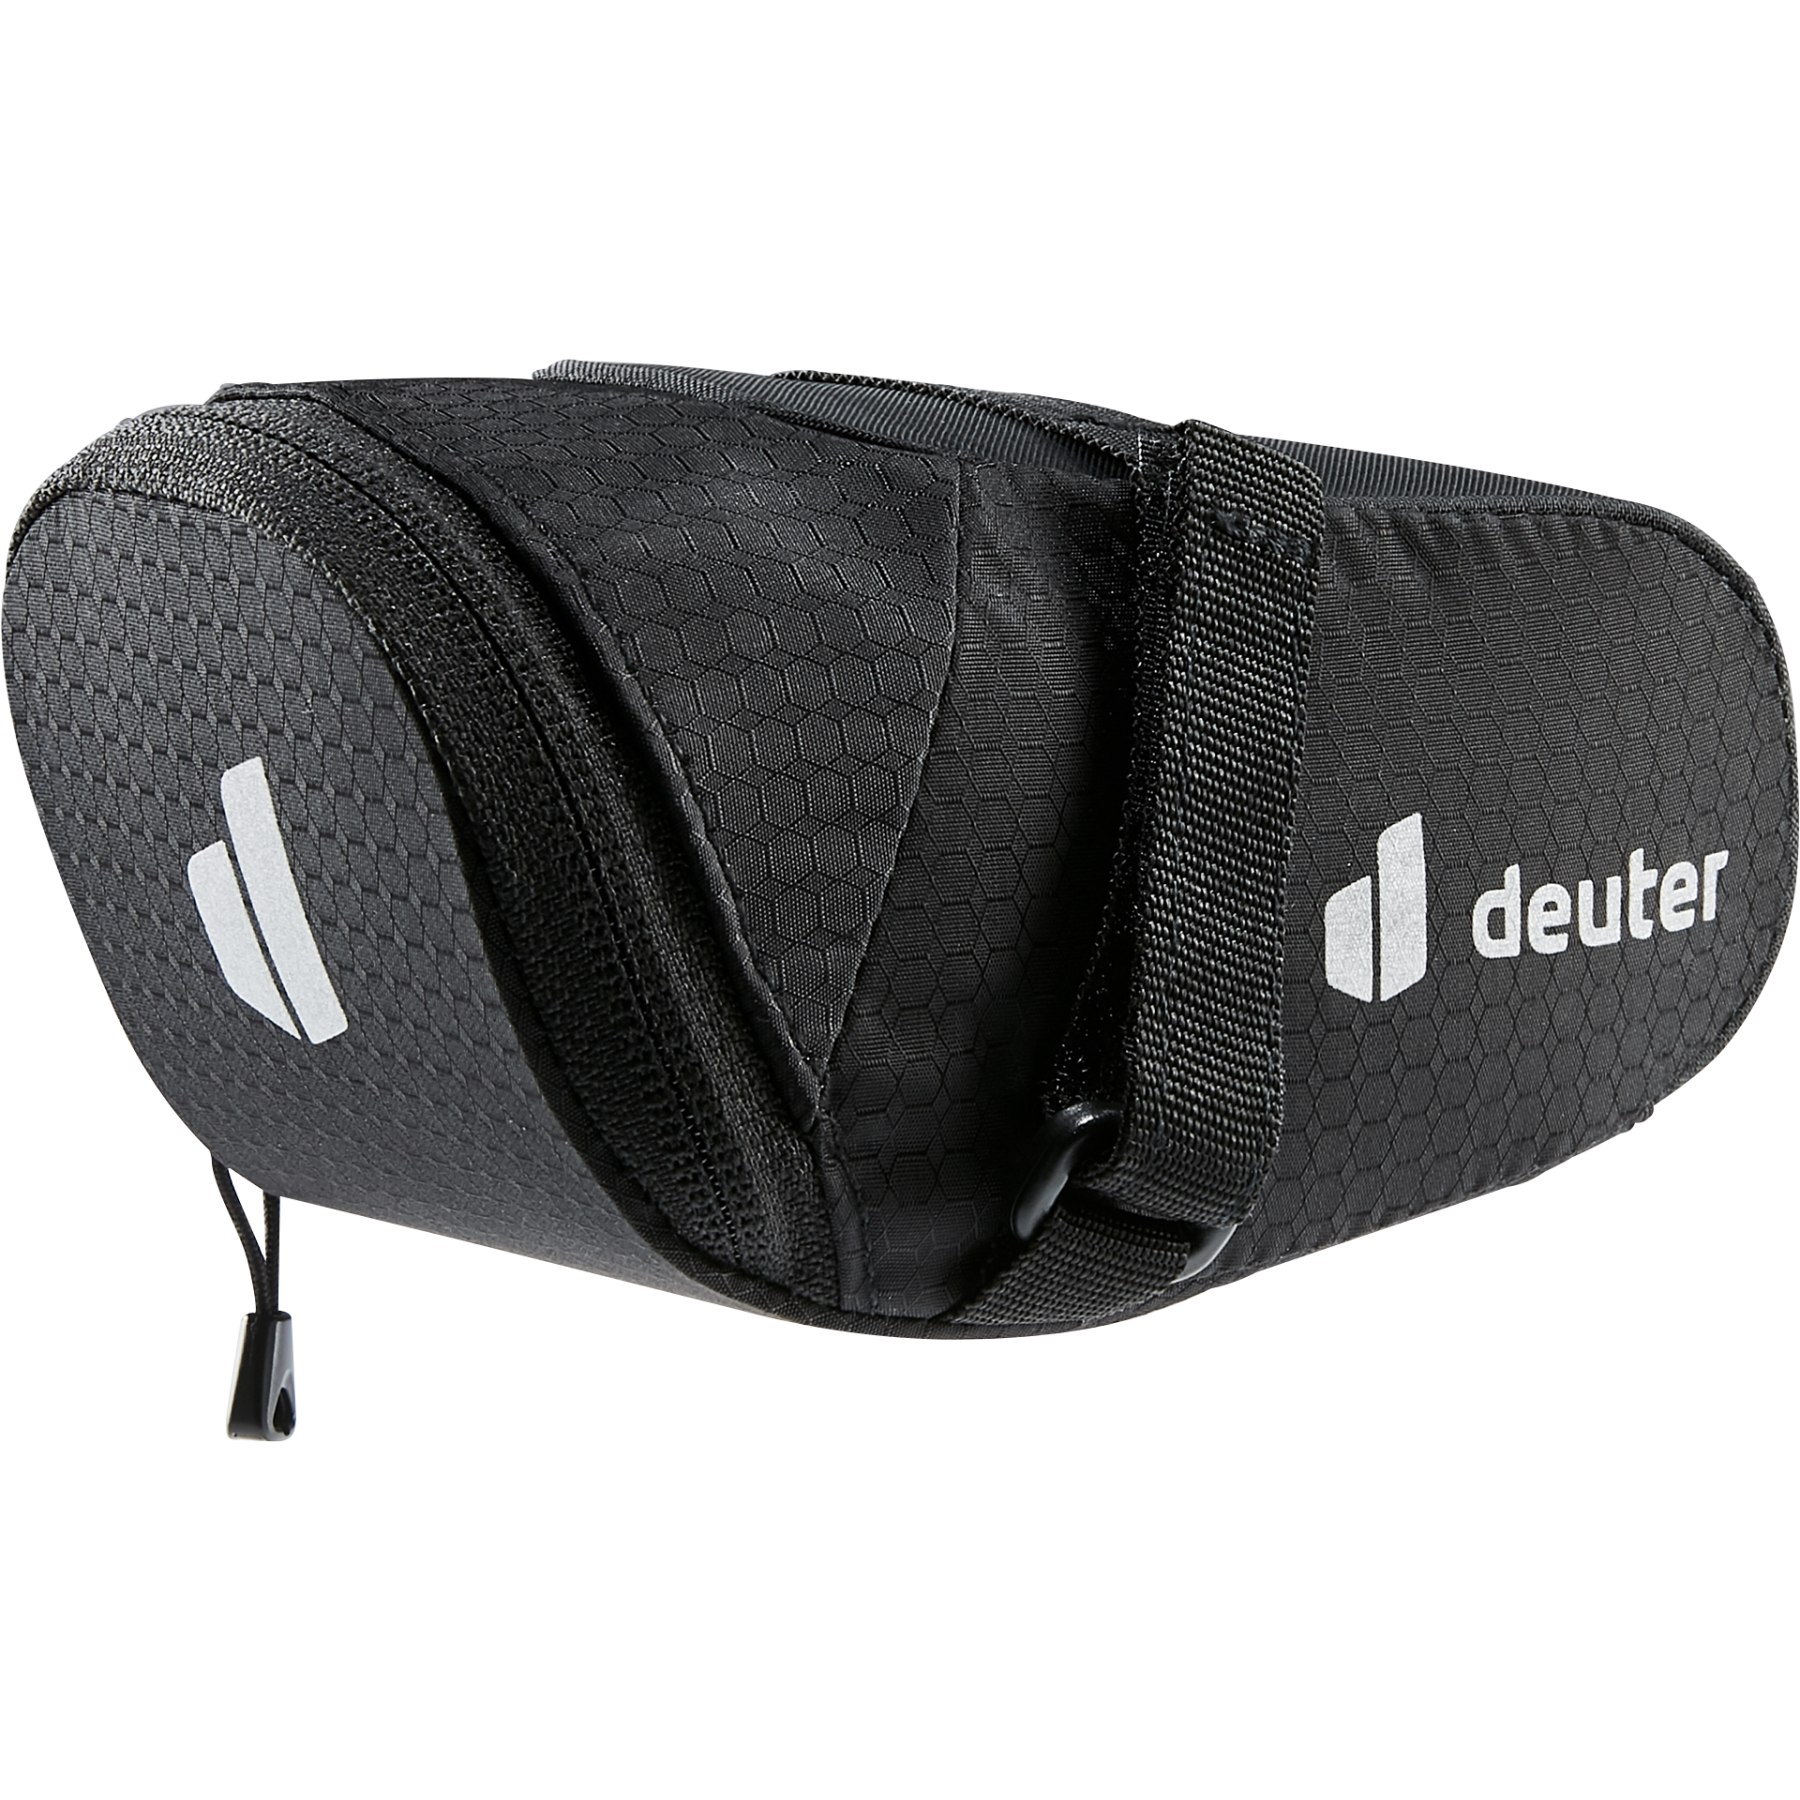 Productfoto van Deuter Bike Bag 0.5L Zadeltas - black